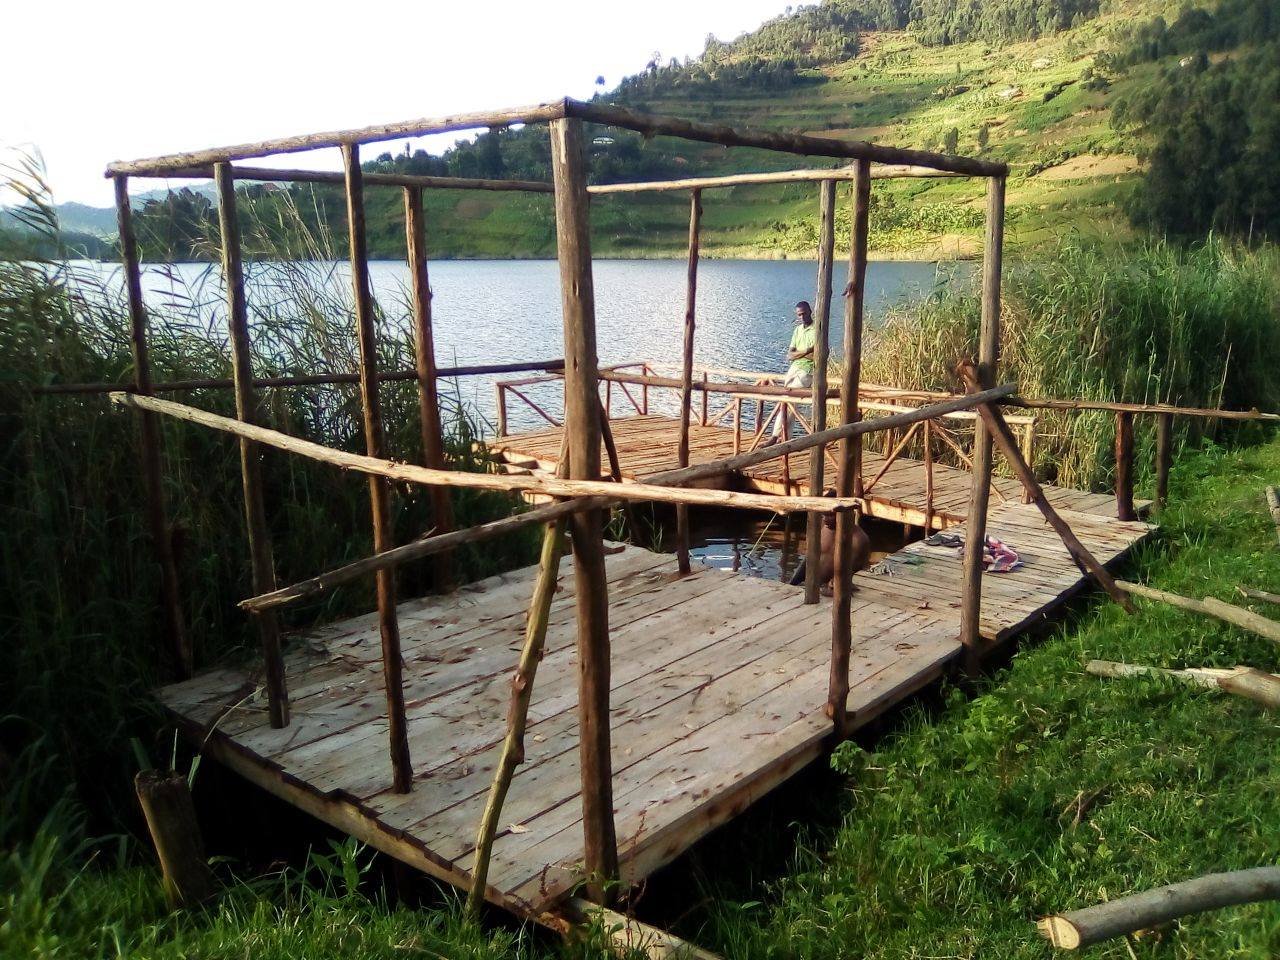 Kikötőt az ugandai gyerekeknek! - Docks for children in Uganda!